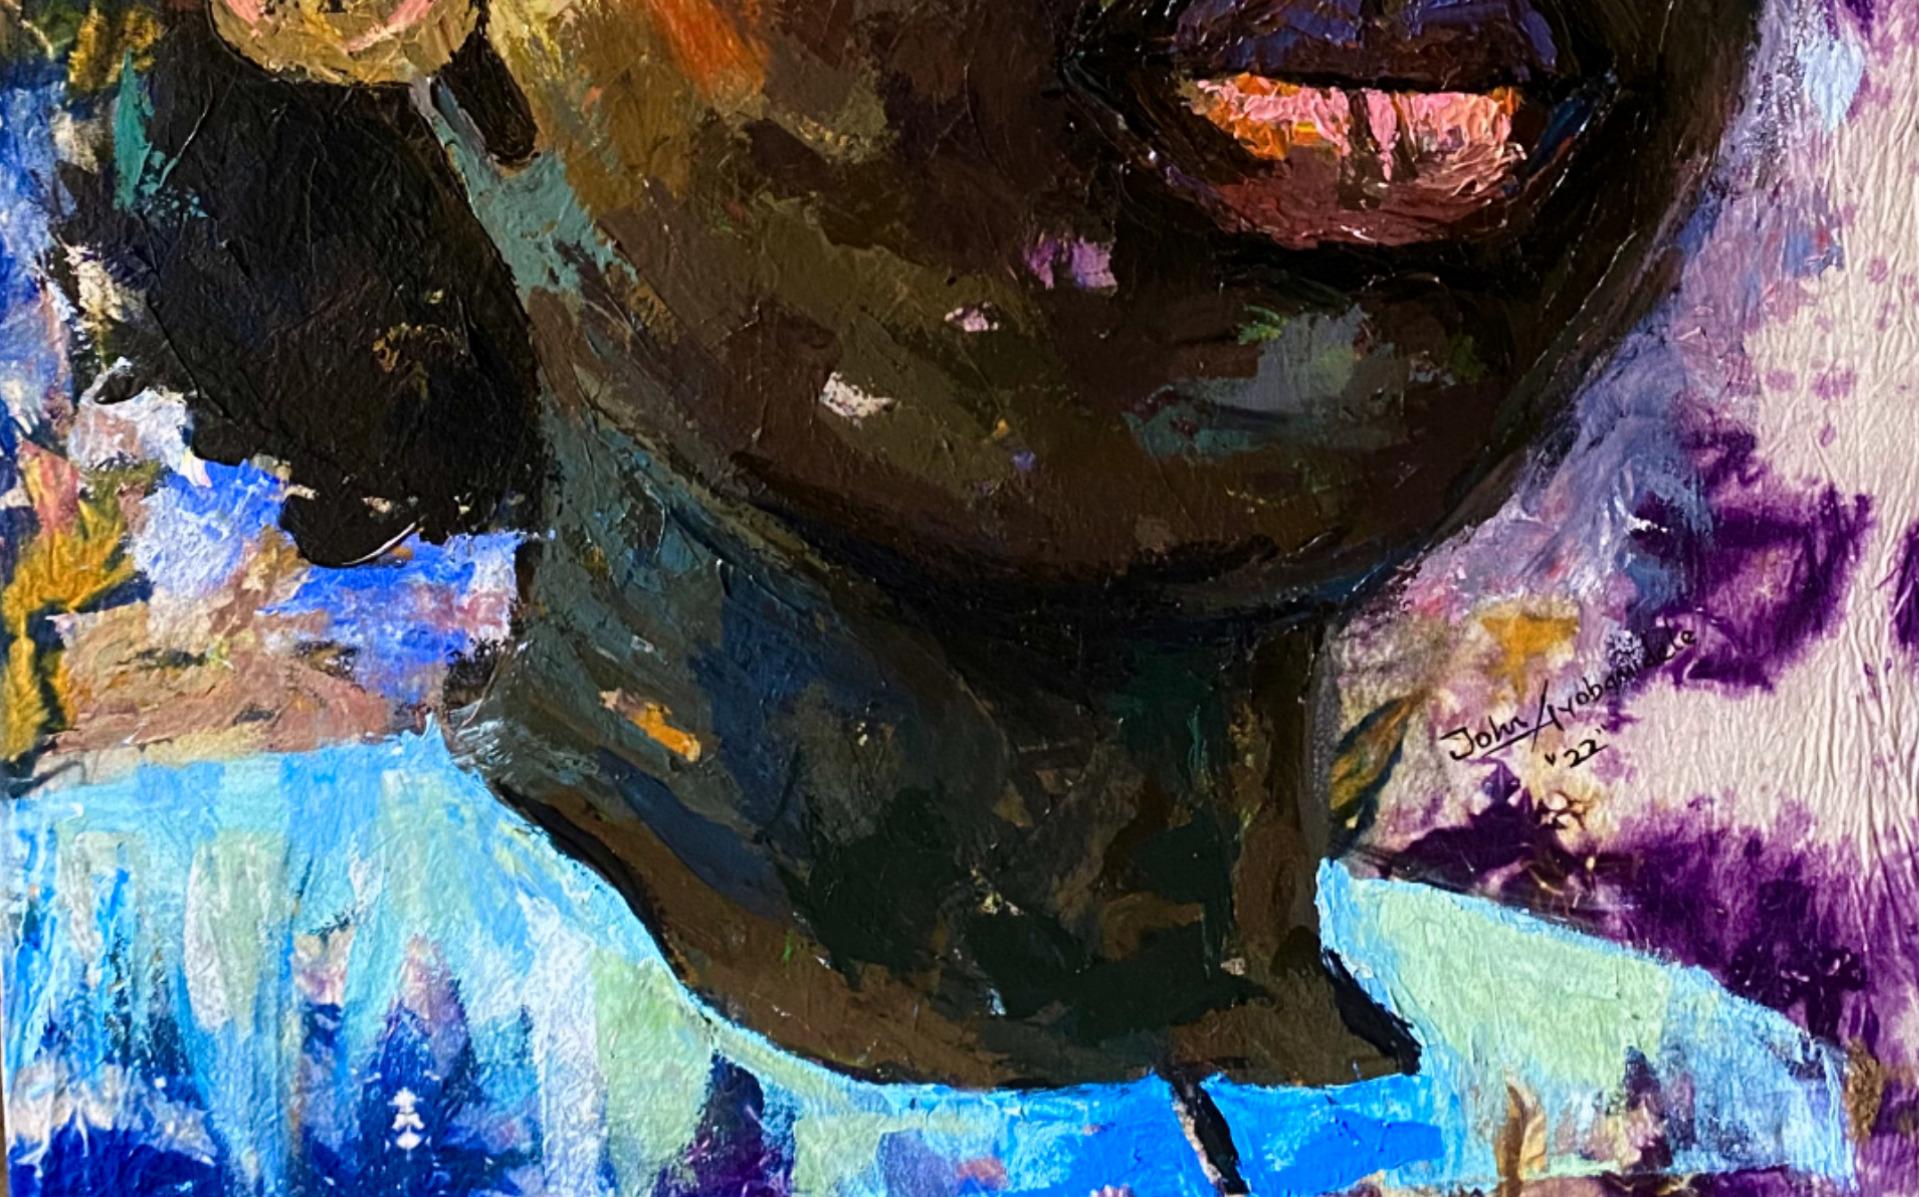 Dieses Gemälde ist ein Gemälde zur Selbstdarstellung von Ayomabidele John. Die Proklamation lautet wie folgt:
Ich entscheide mich dafür, voller Liebe und Mitgefühl zu sein. Ich weigere mich, dass auch nur ein Teil meines Herzens von der Beleidigung